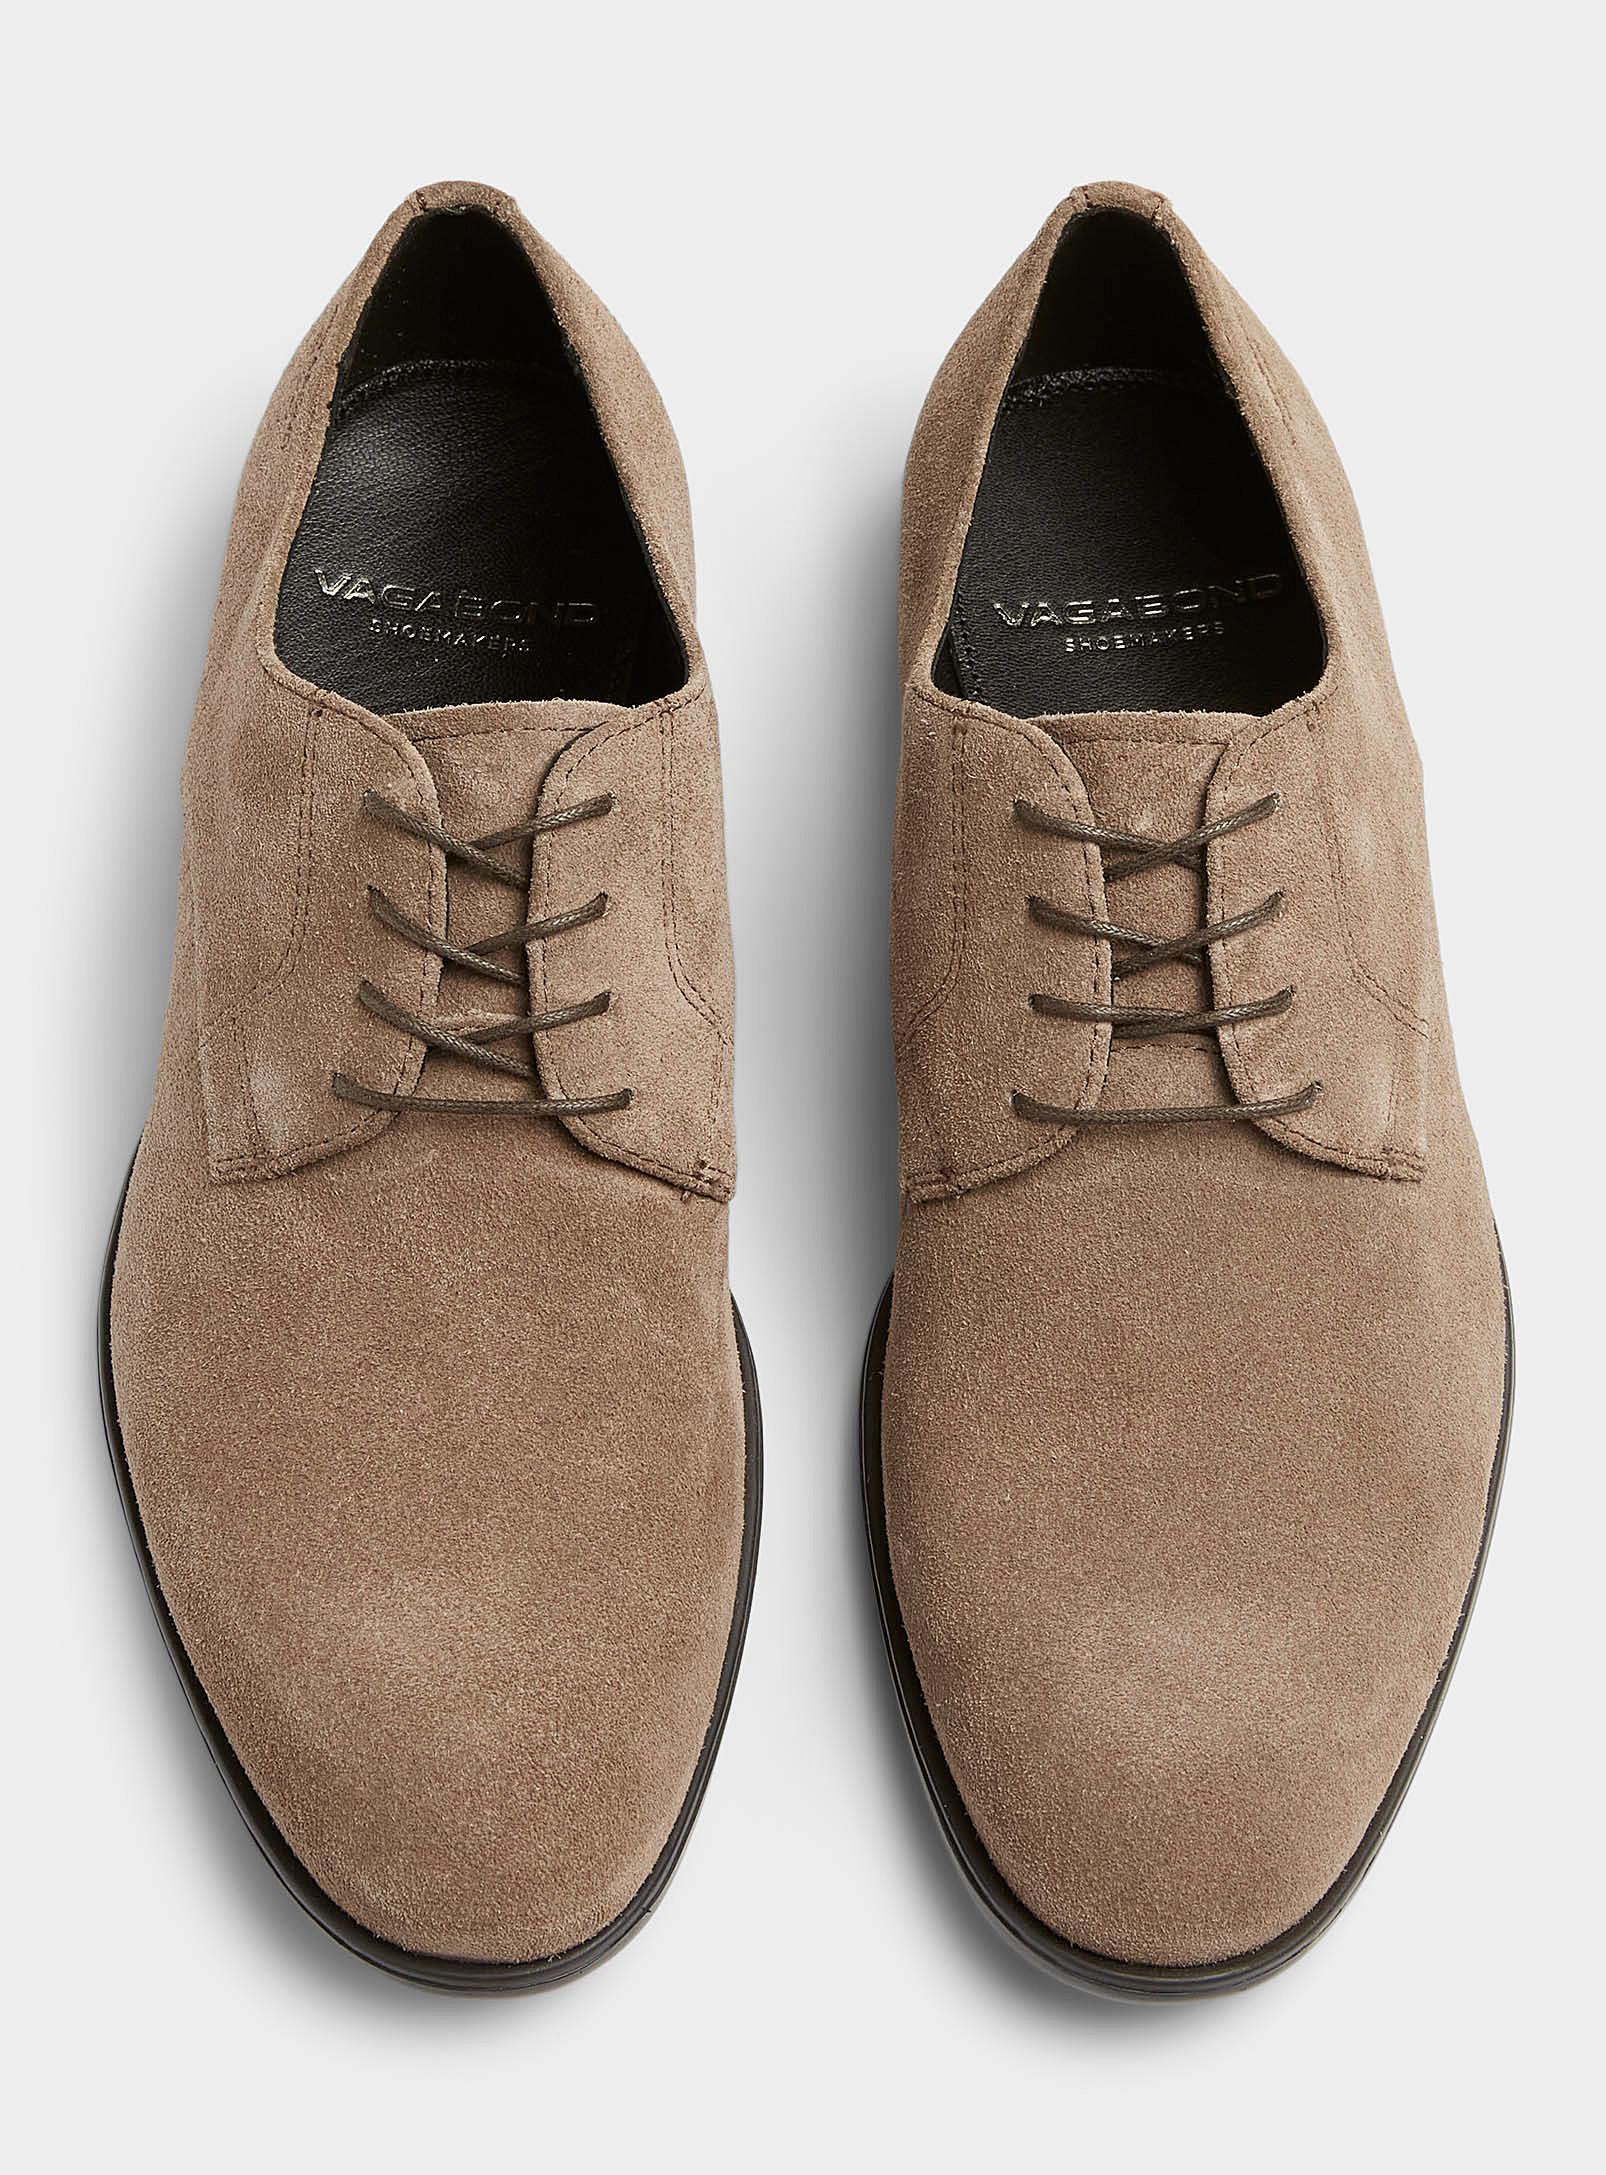 Vagabond Shoemakers Harvey Suede Derby Shoes Men for Men | Lyst